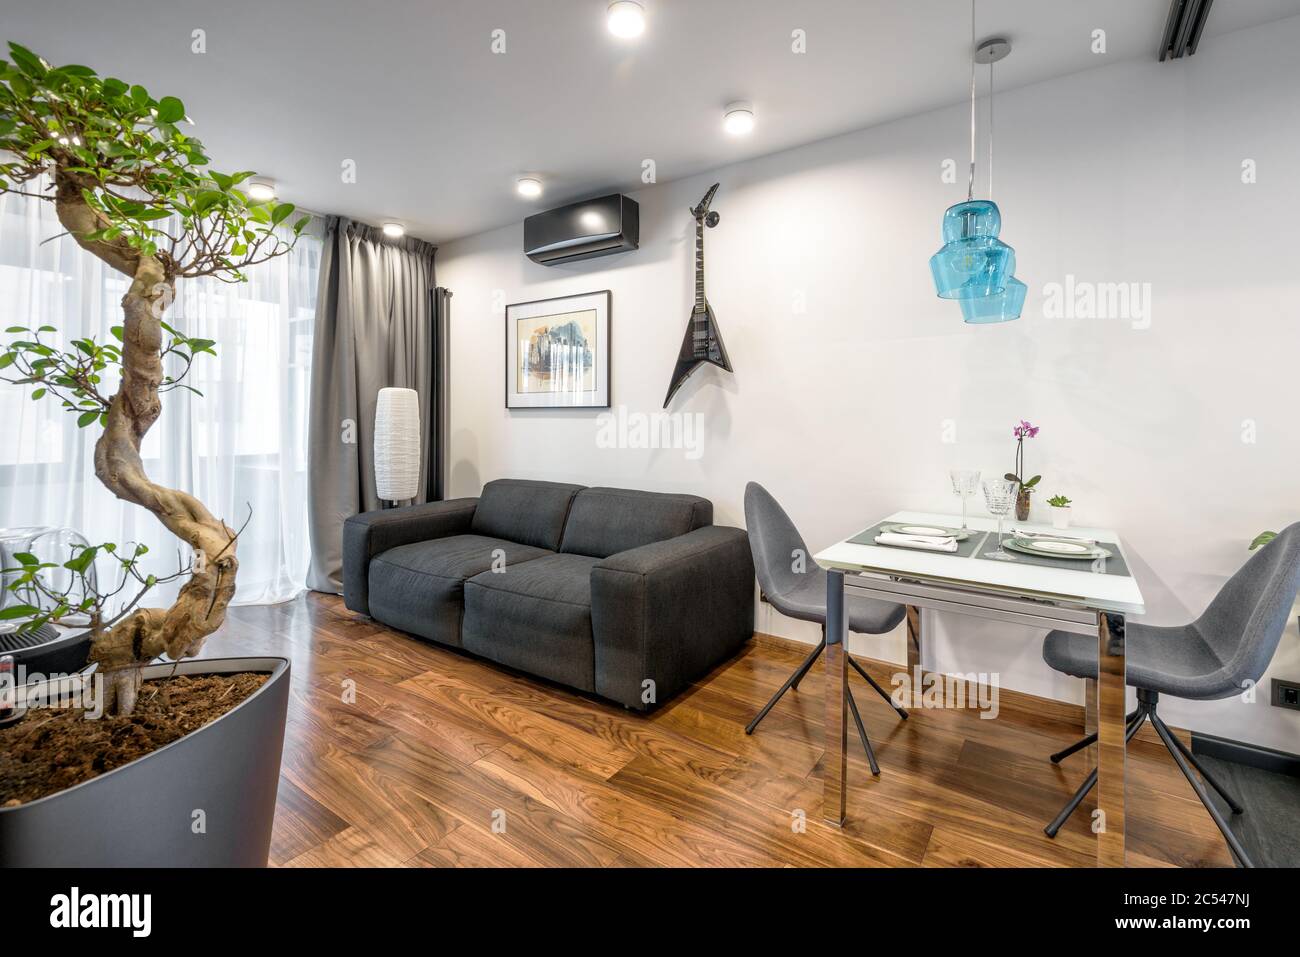 Mosca - 25 marzo 2018: Interni moderni con divano, tavolo e piante. Splendido design minimalista degli interni del soggiorno con pareti bianche. Luxu Foto Stock